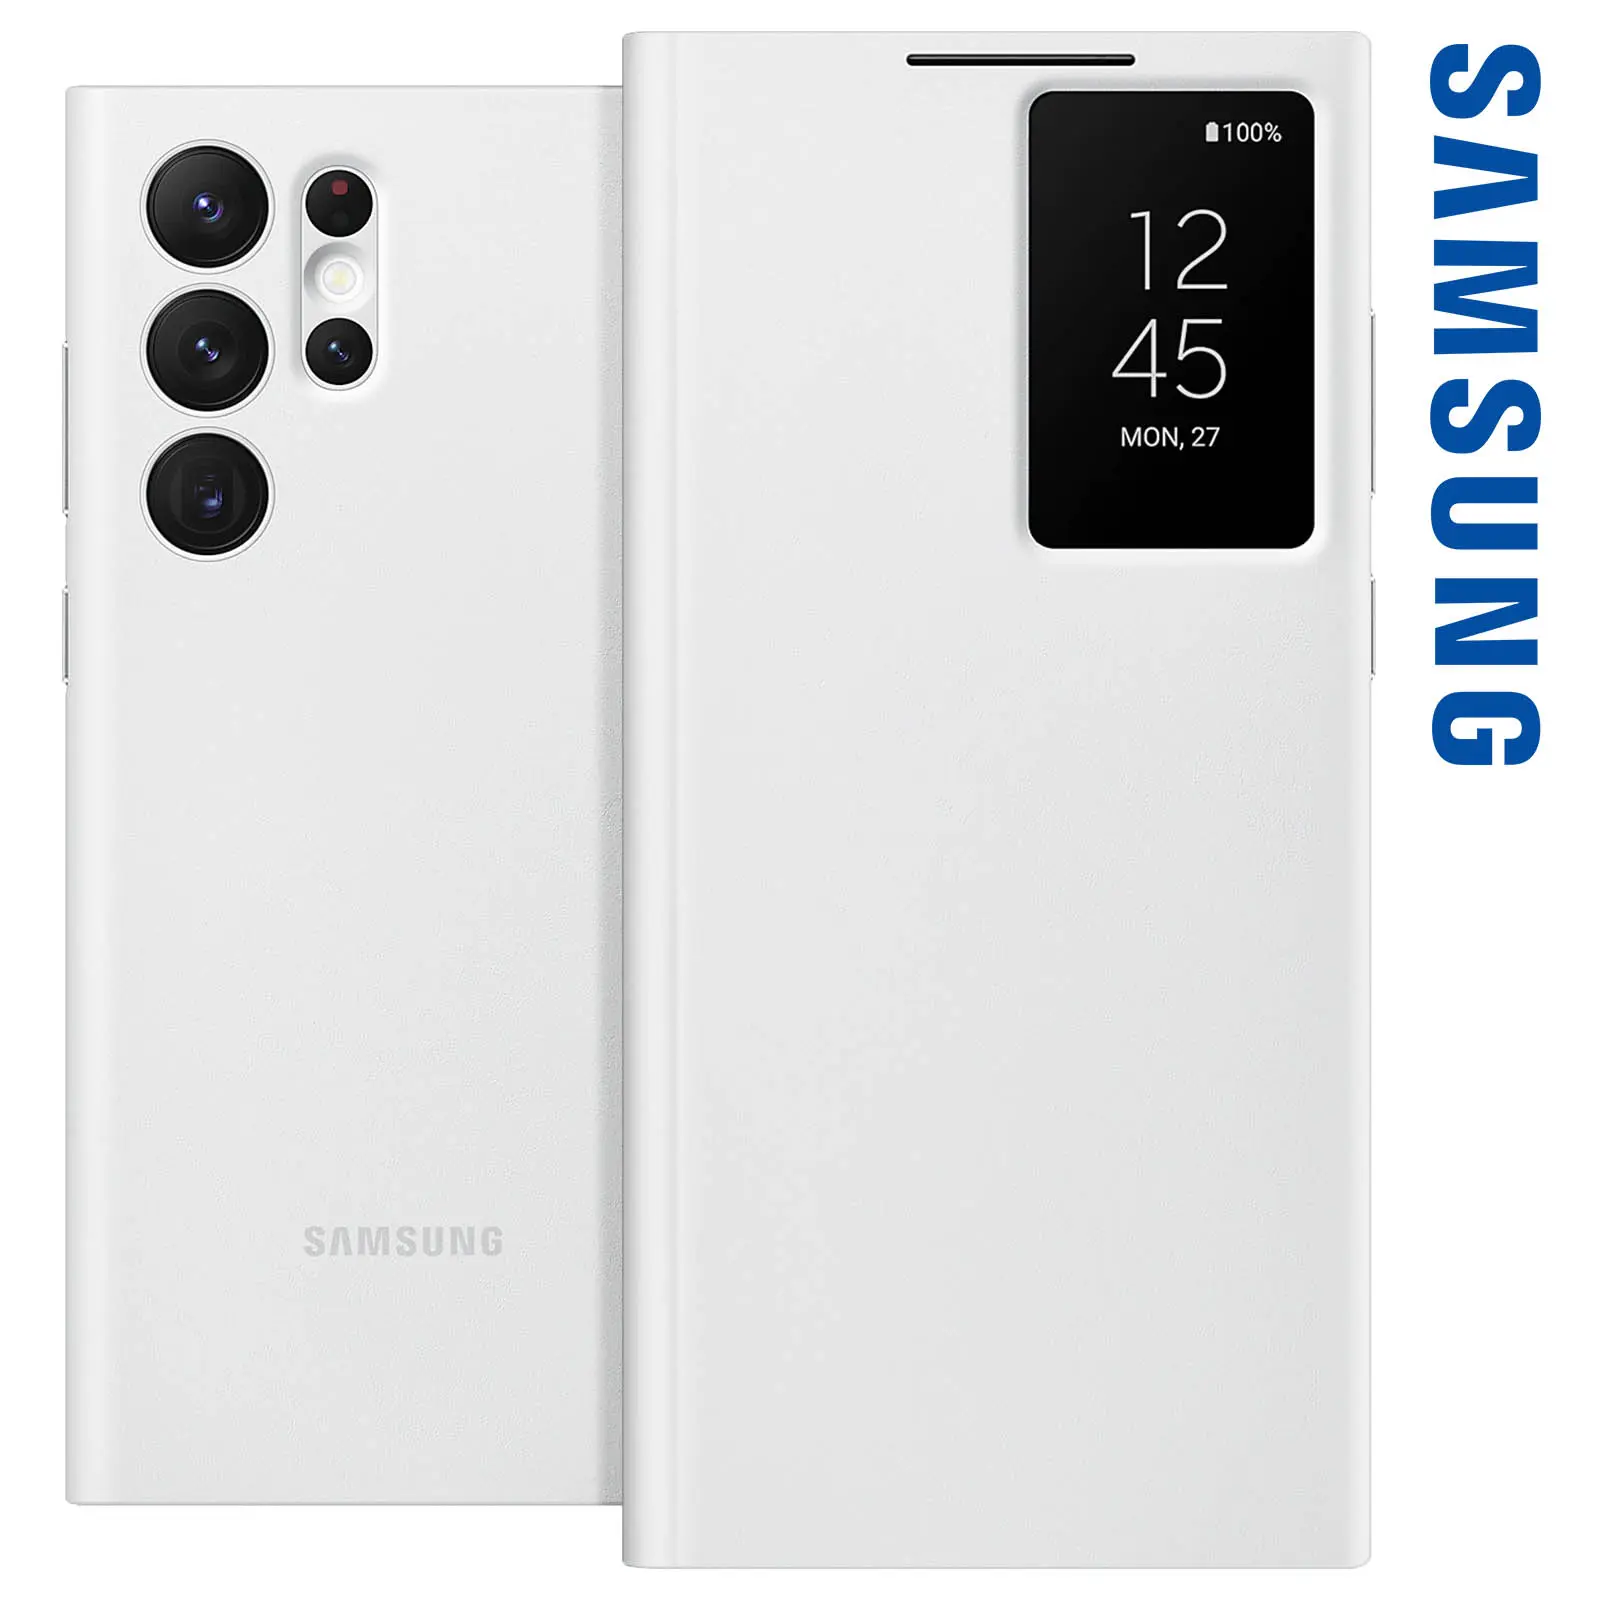 ventana inteligente samsung - Cómo activar notificación emergente en Samsung